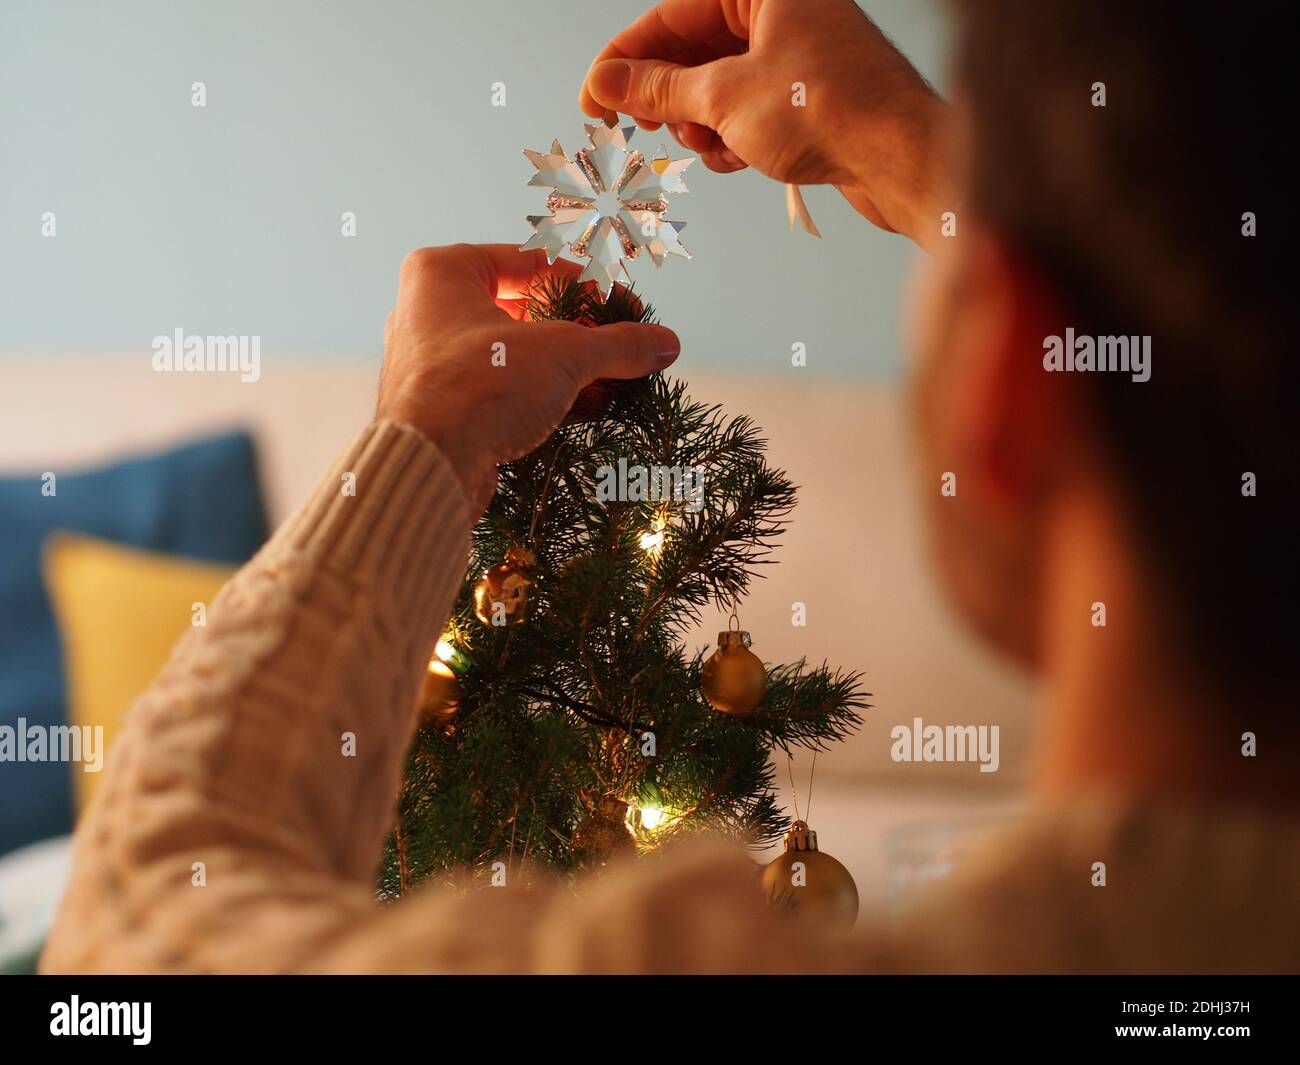 Kaukasischer junger Mann neben einem Weihnachtsbaum in einem Wollpullover, der ein Geschenk in den Händen hält. Er genießt die Ferien in einem gemütlichen Zuhause. Stockfoto